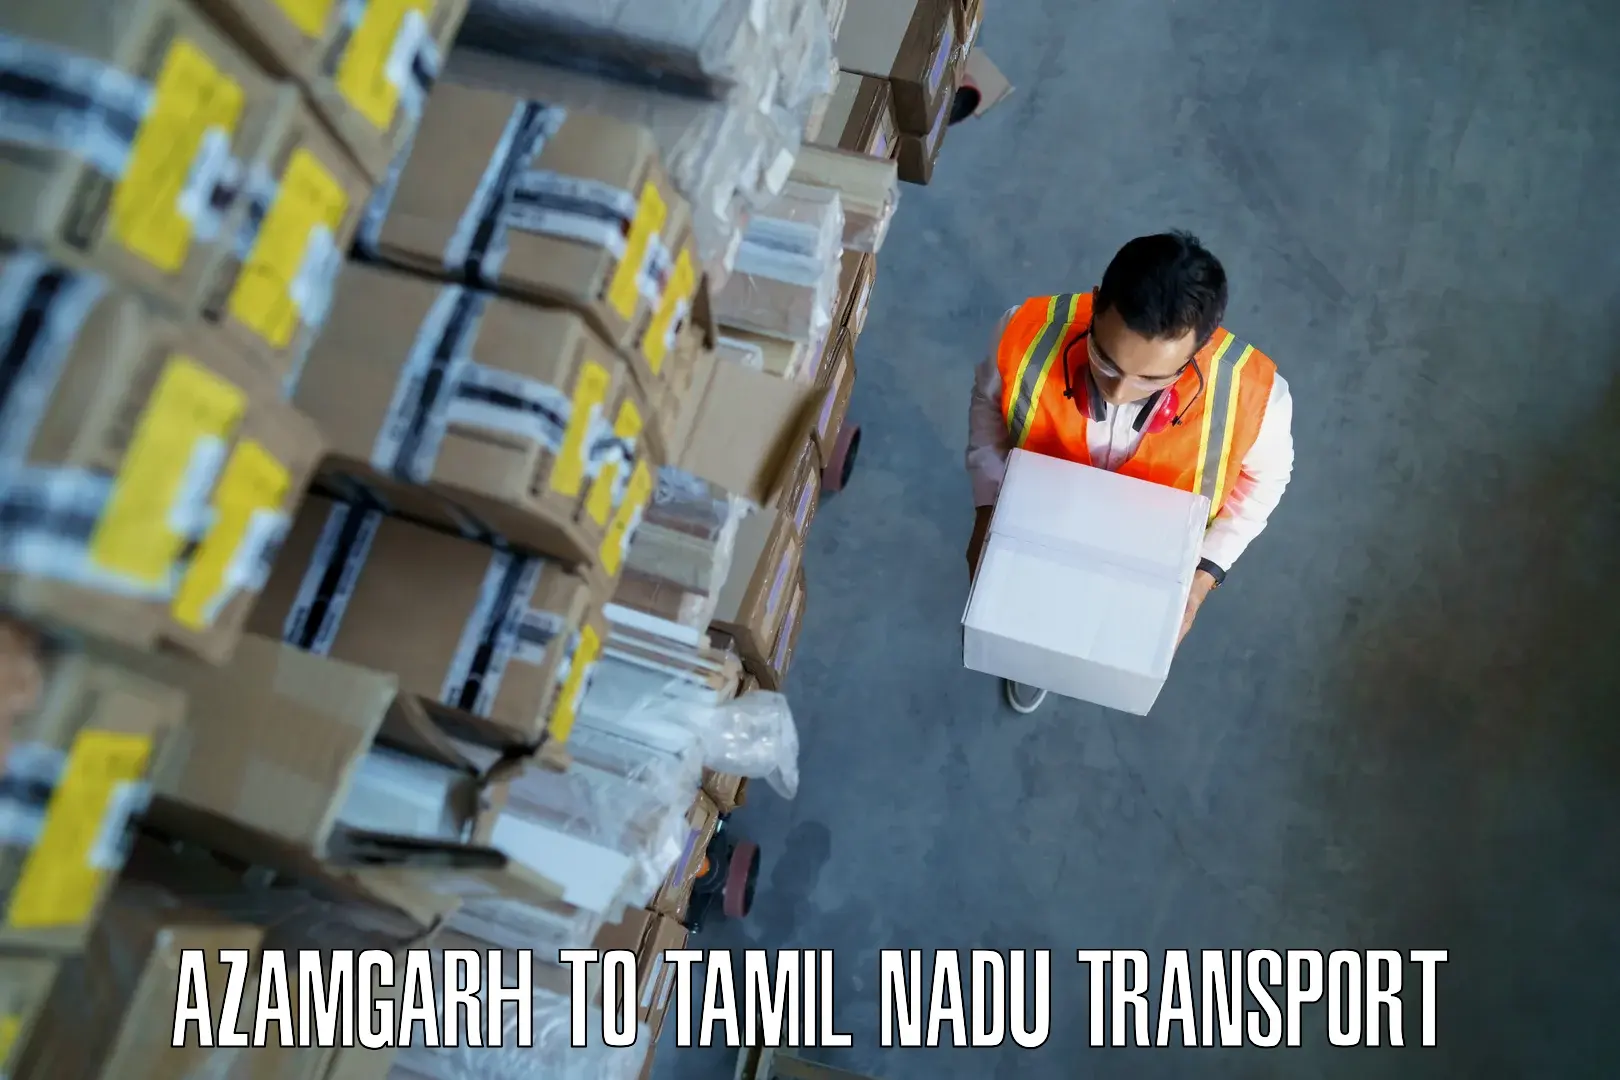 Daily parcel service transport Azamgarh to Tiruchengodu